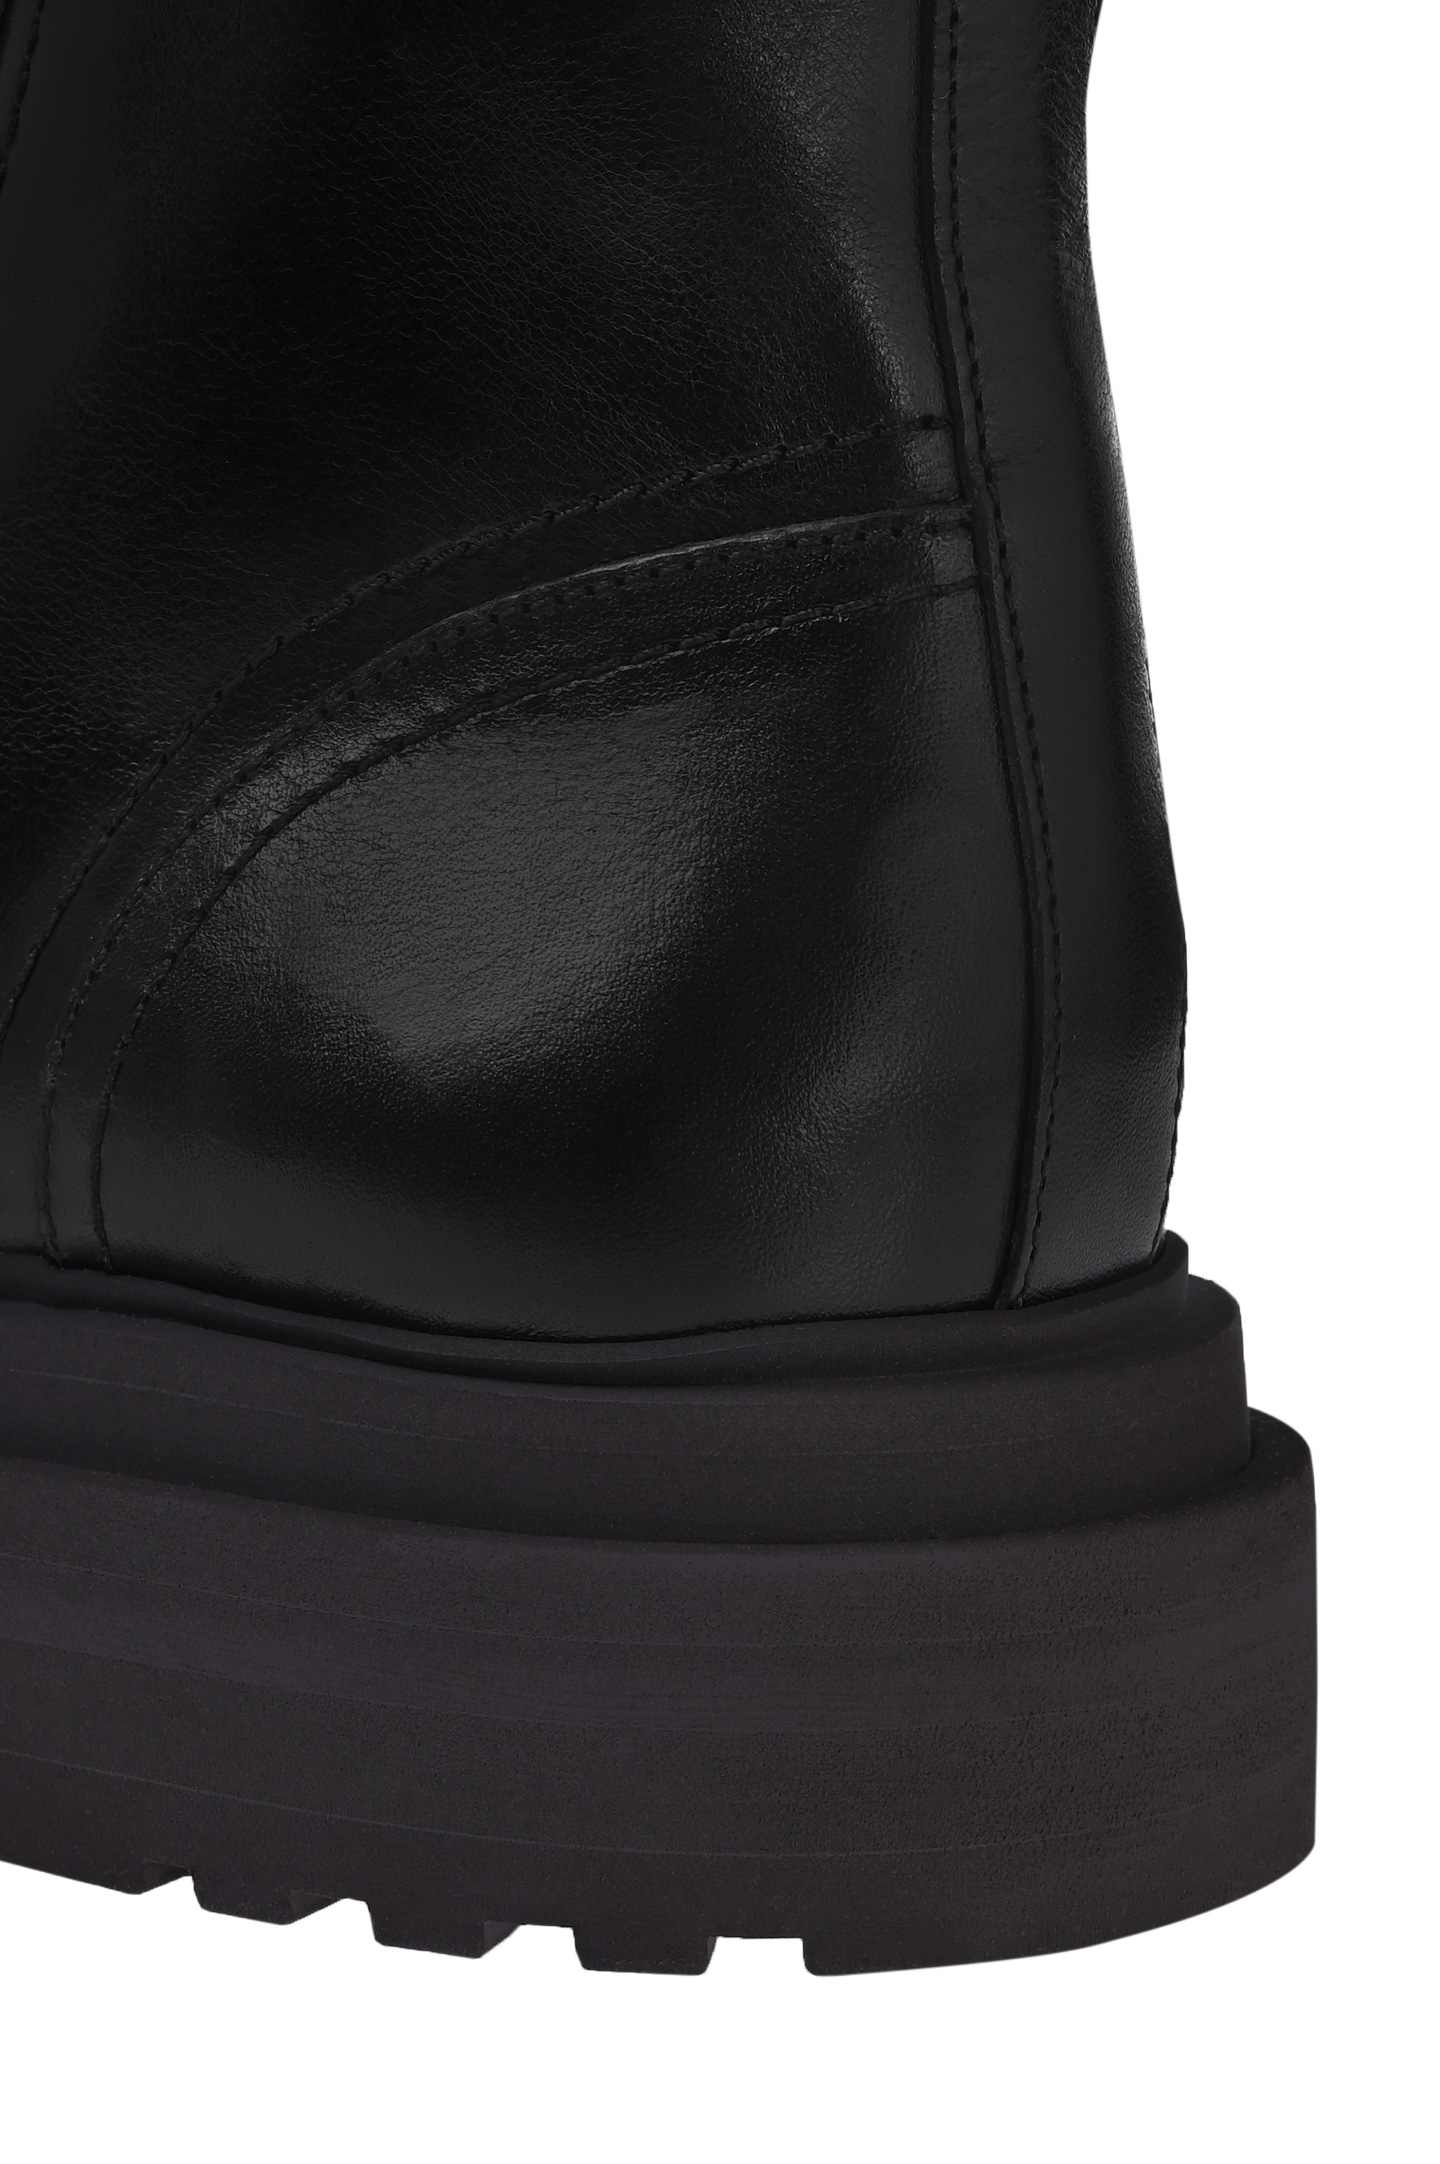 Ботинки BRUNELLO  CUCINELLI MZTLG2518P, цвет: Черный, Женский